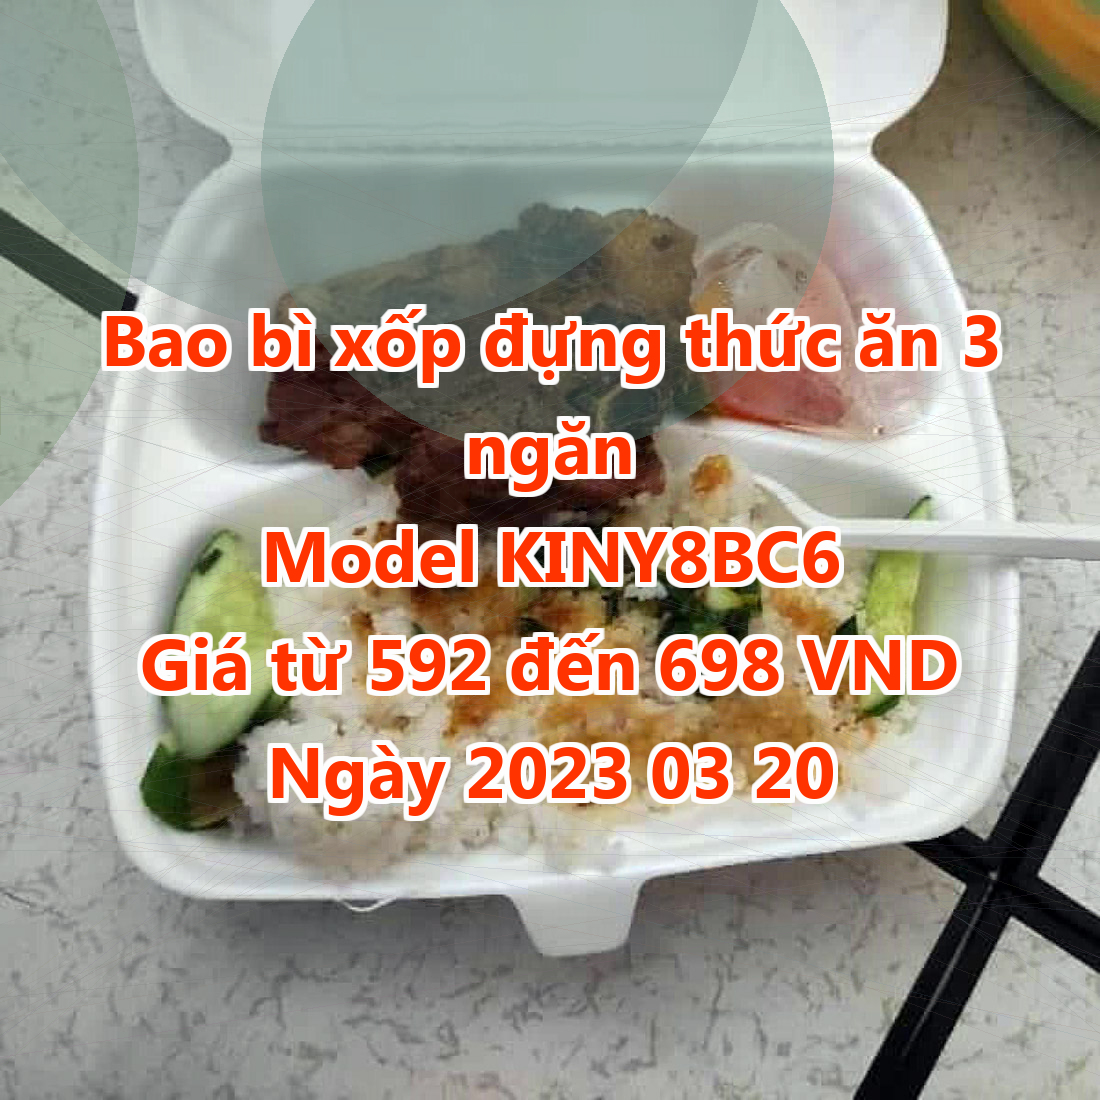 Bao bì xốp đựng thức ăn 3 ngăn - Model KINY8BC6